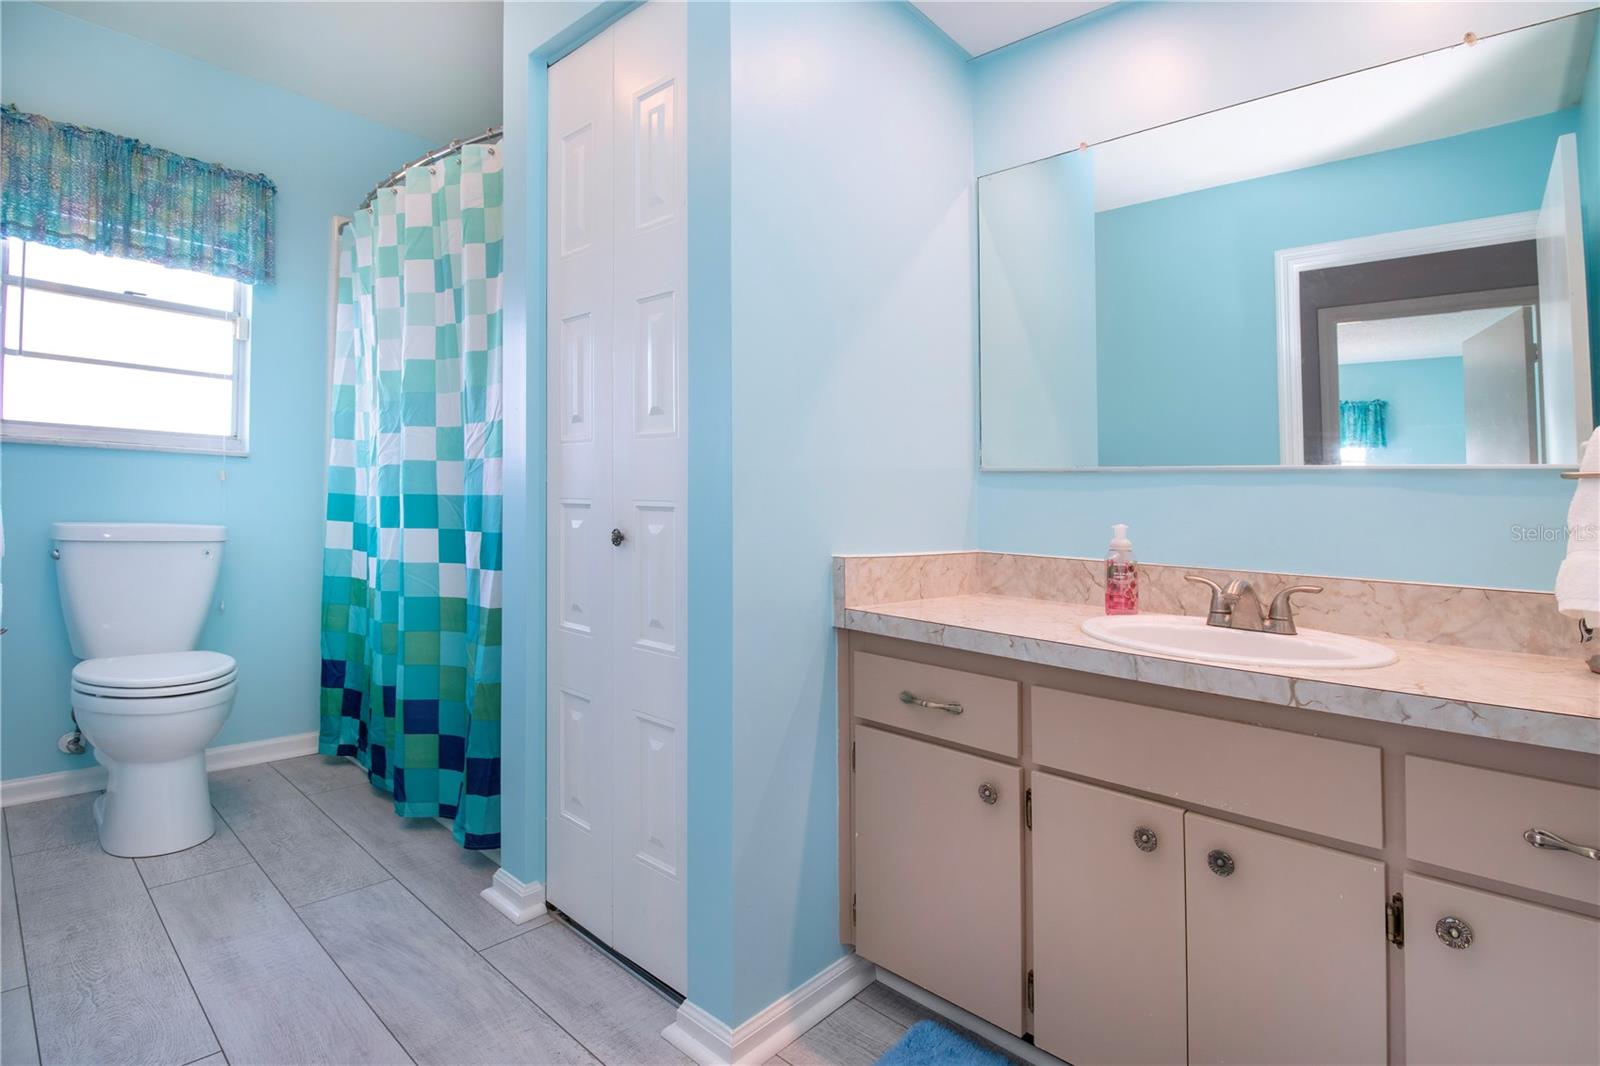 Hall bathroom, New LVP flooring, shower/tub, linen closet